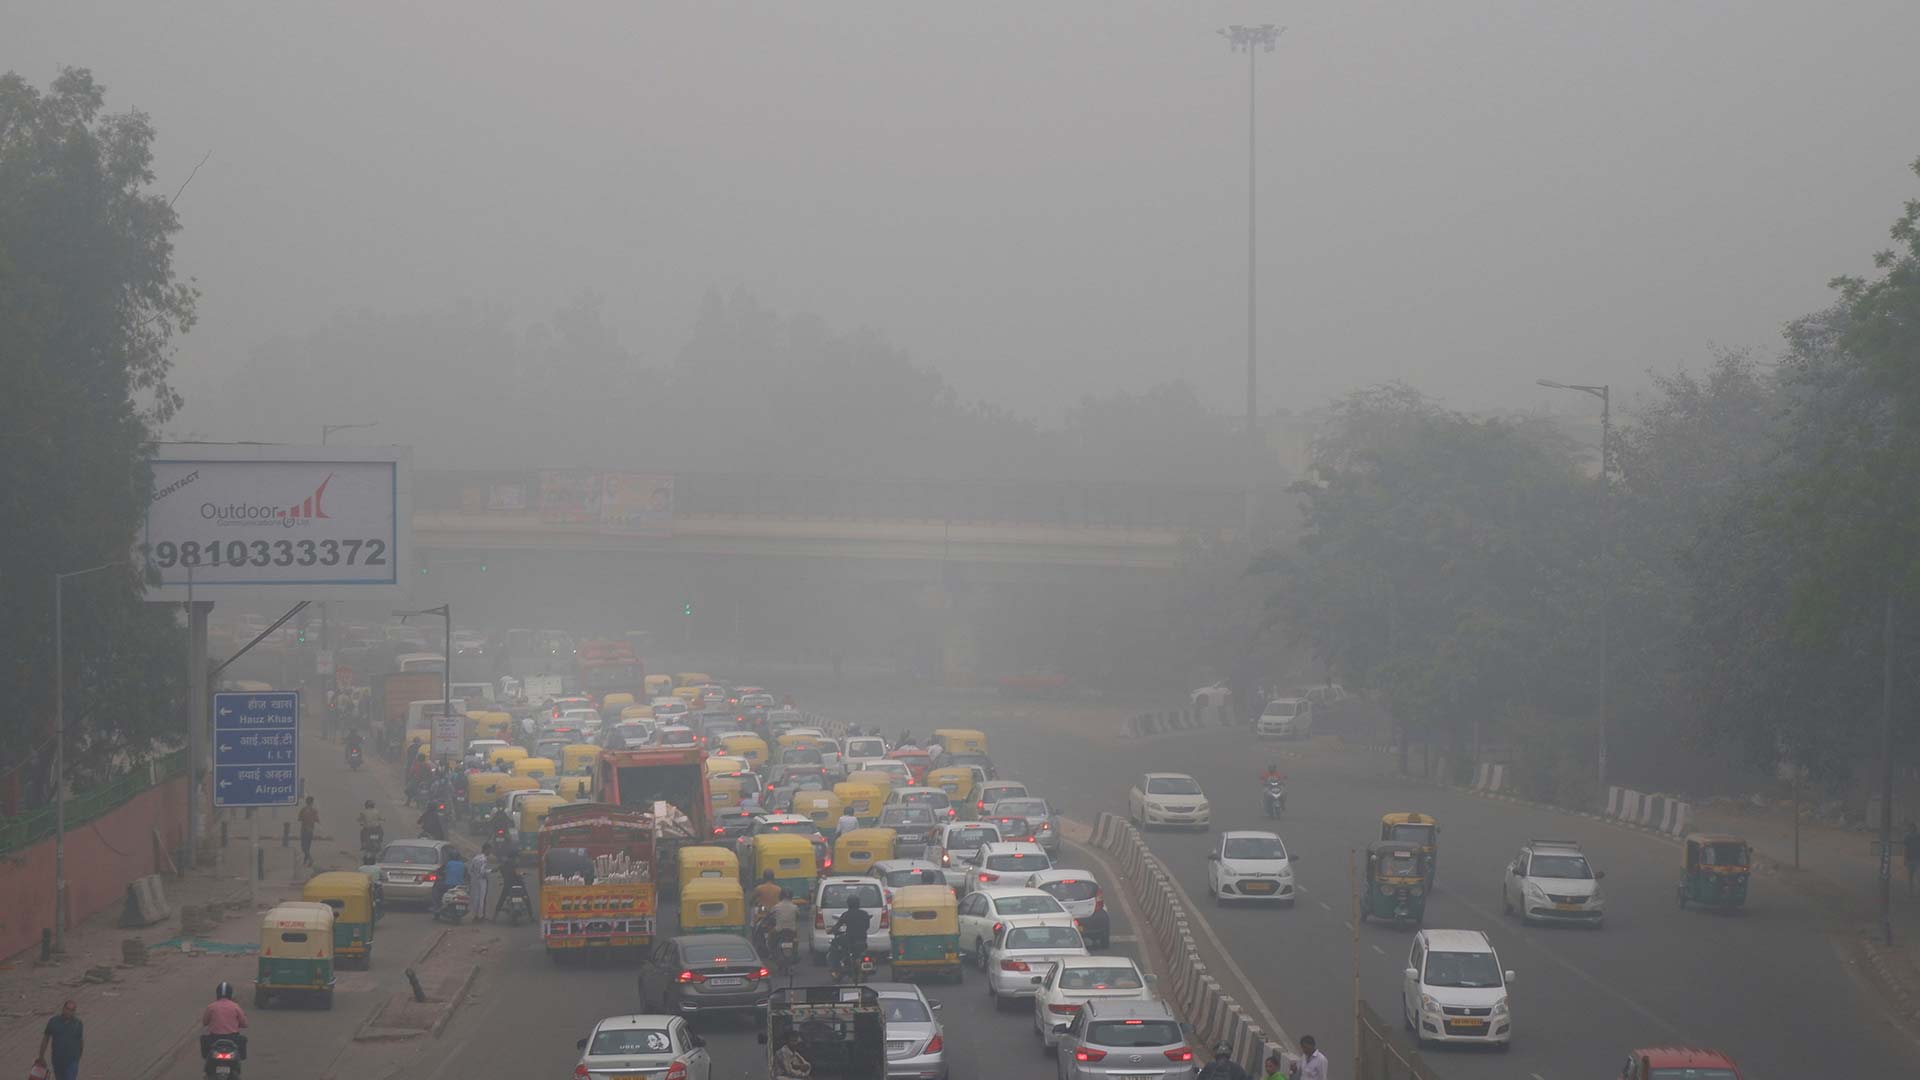 La emergencia de salud en Nueva Delhi por la contaminación obliga a restringir el tráfico